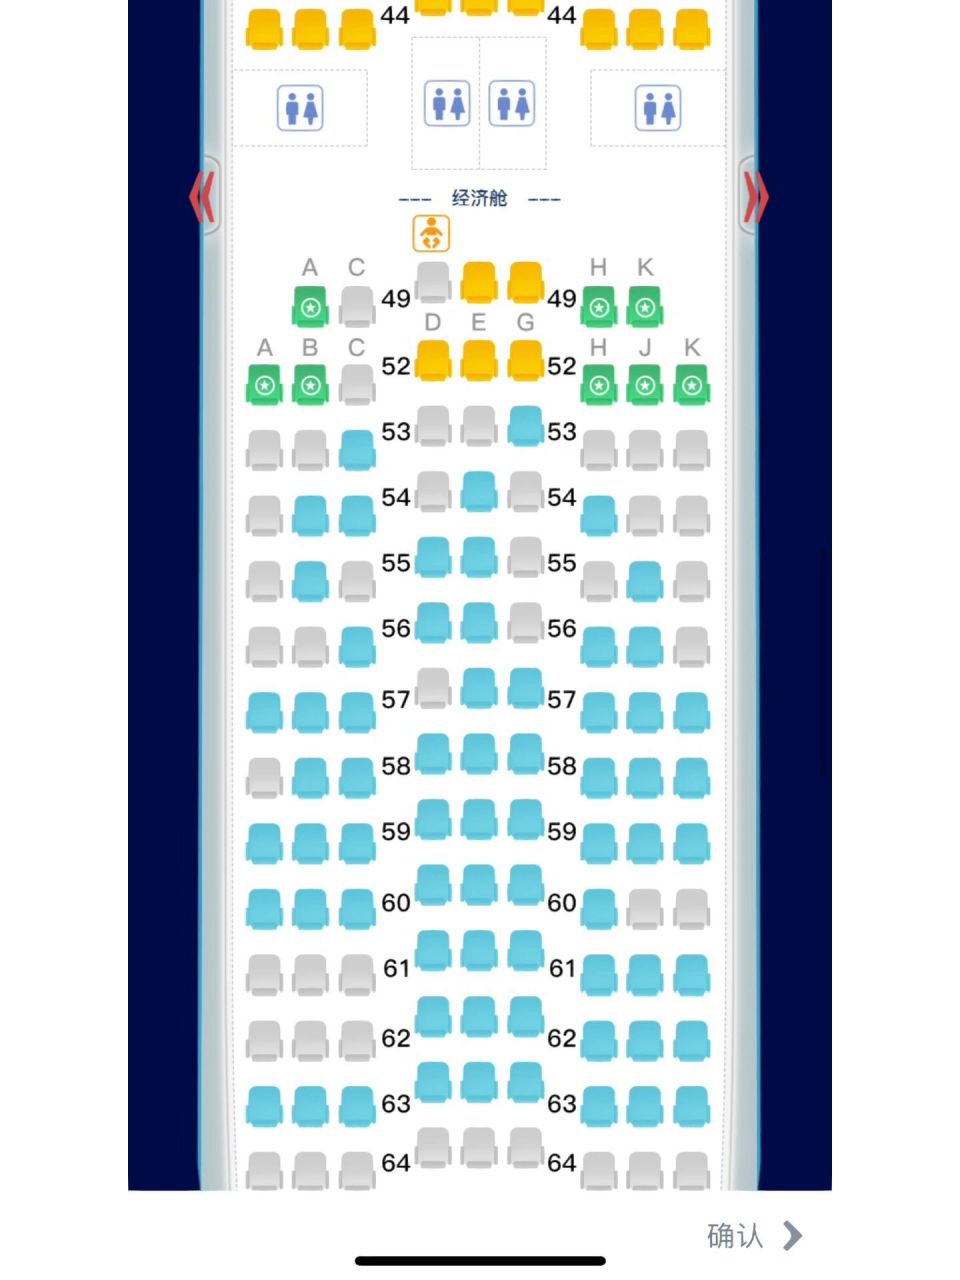 东航空客350内部座位图图片